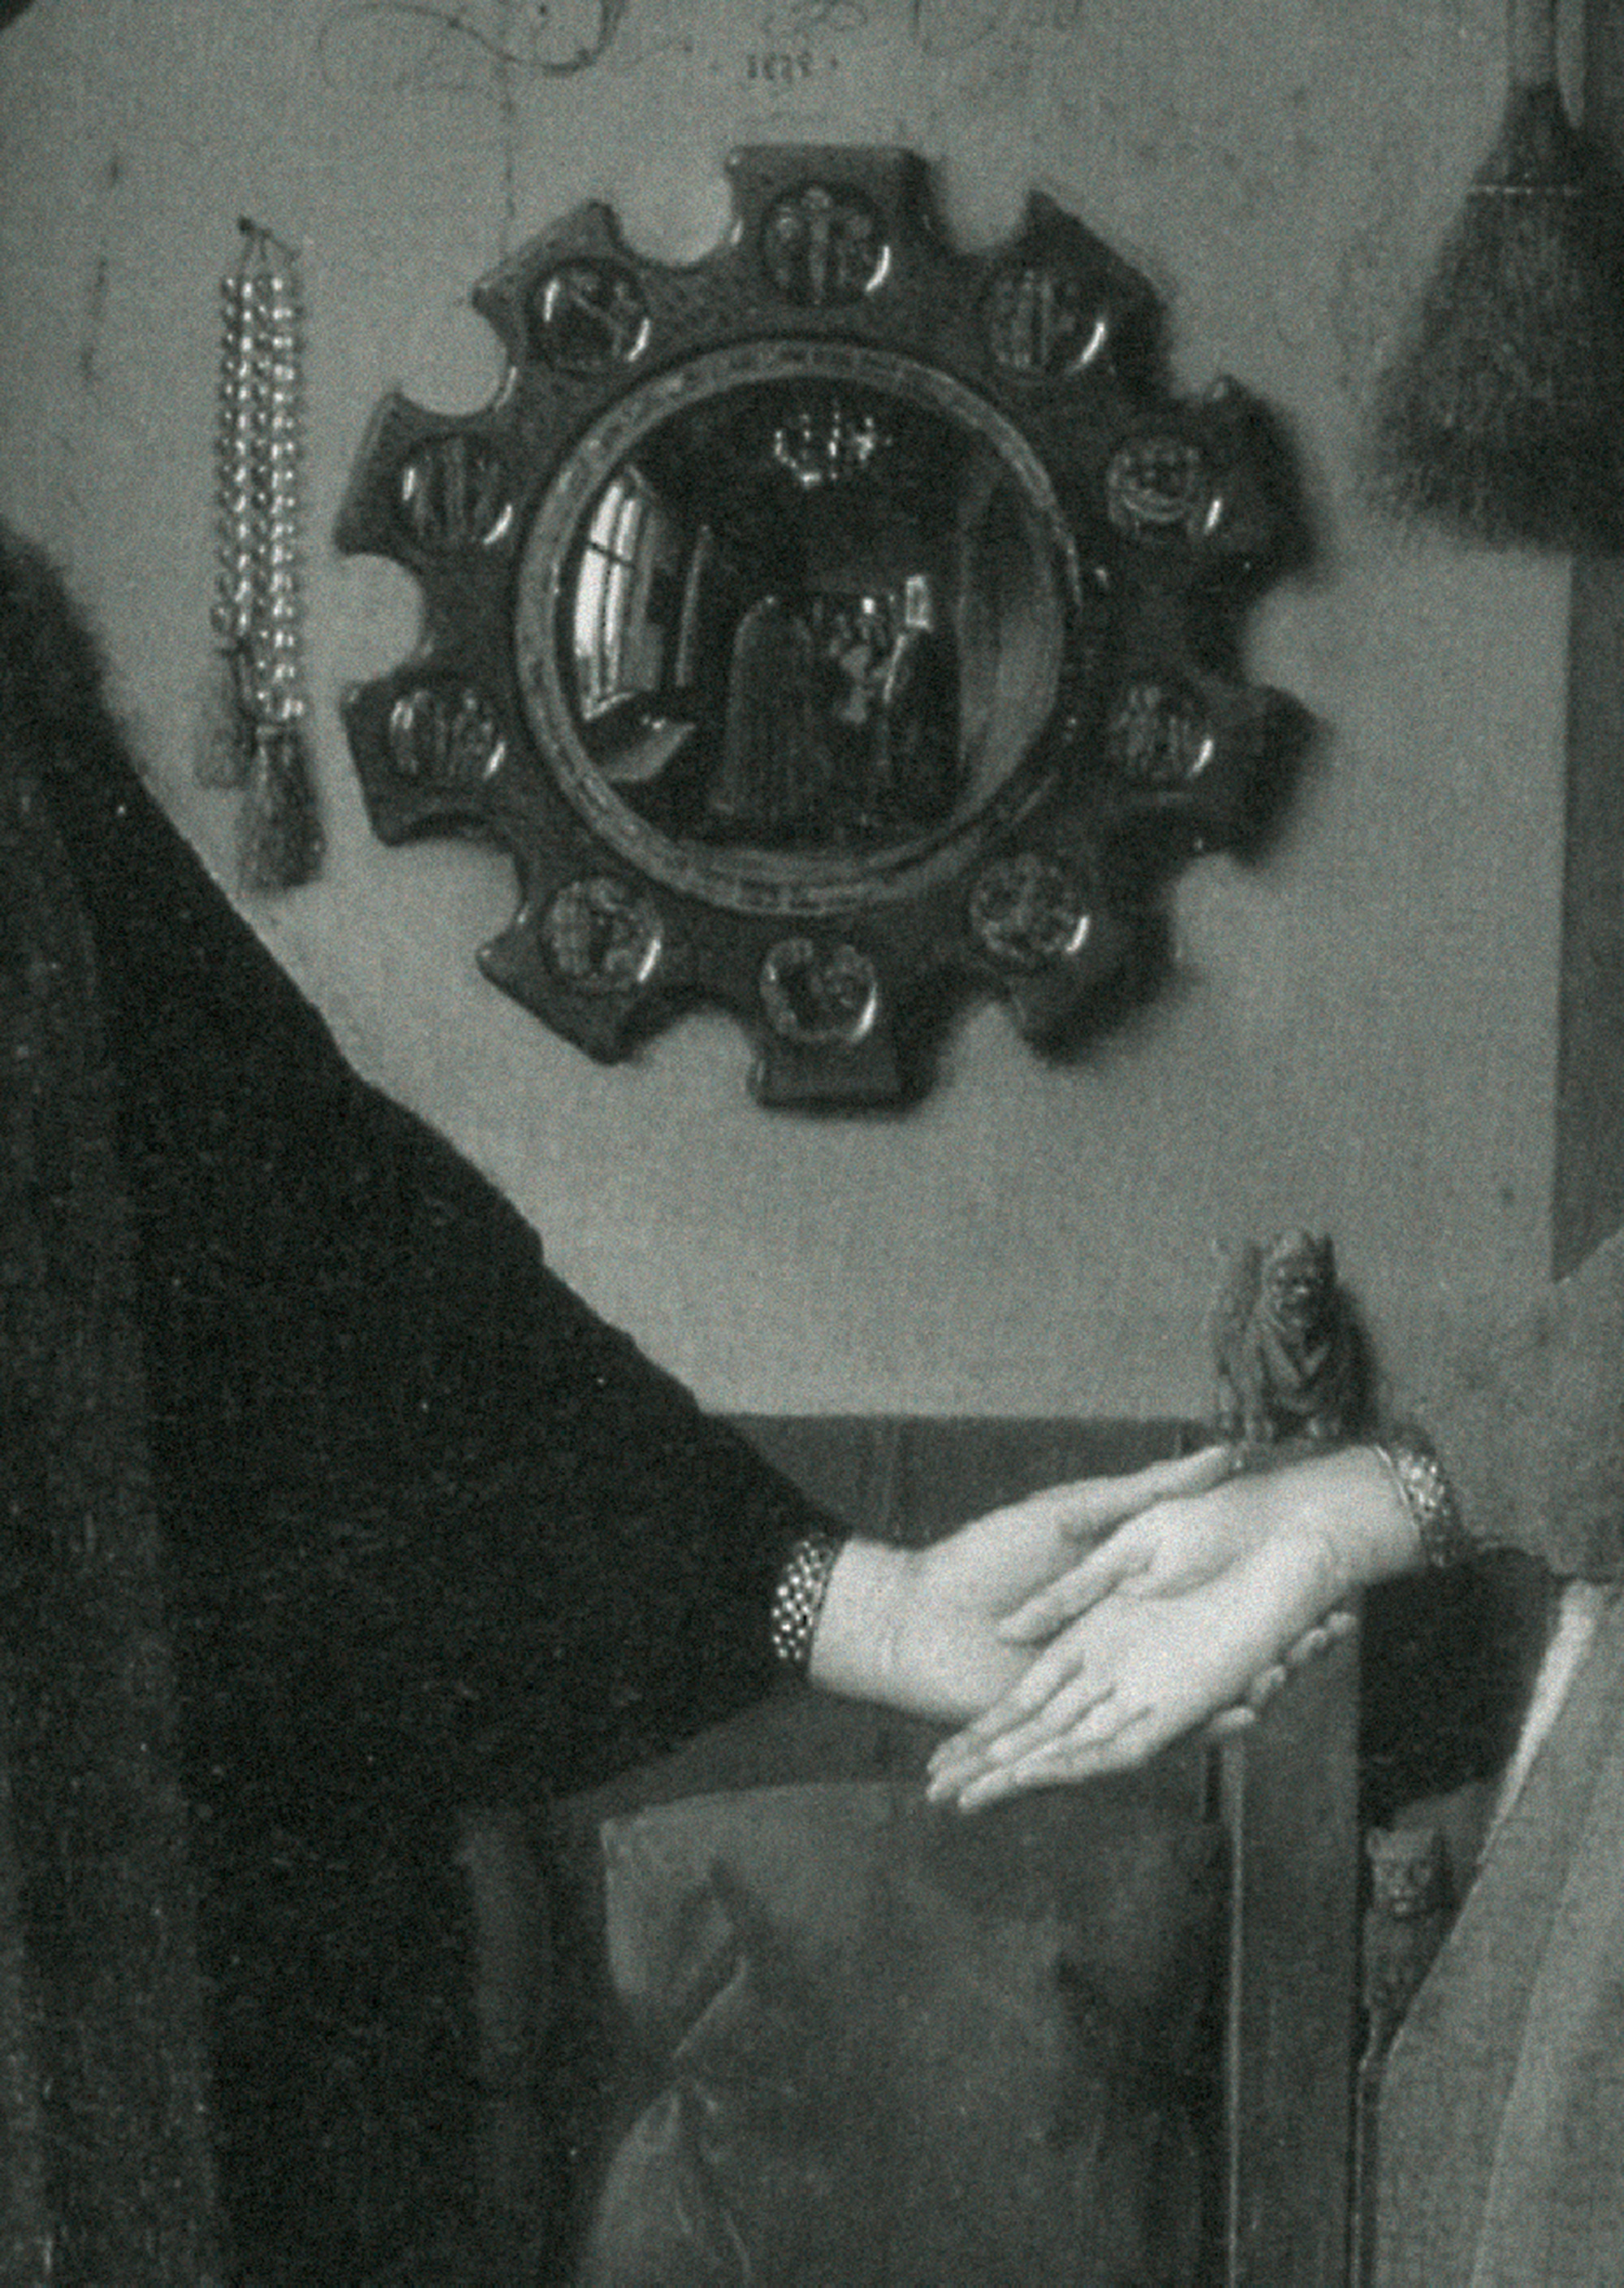 Convex mirror behind hands in Jan Van Eyck’s Arnolfini Portrait, 1434.